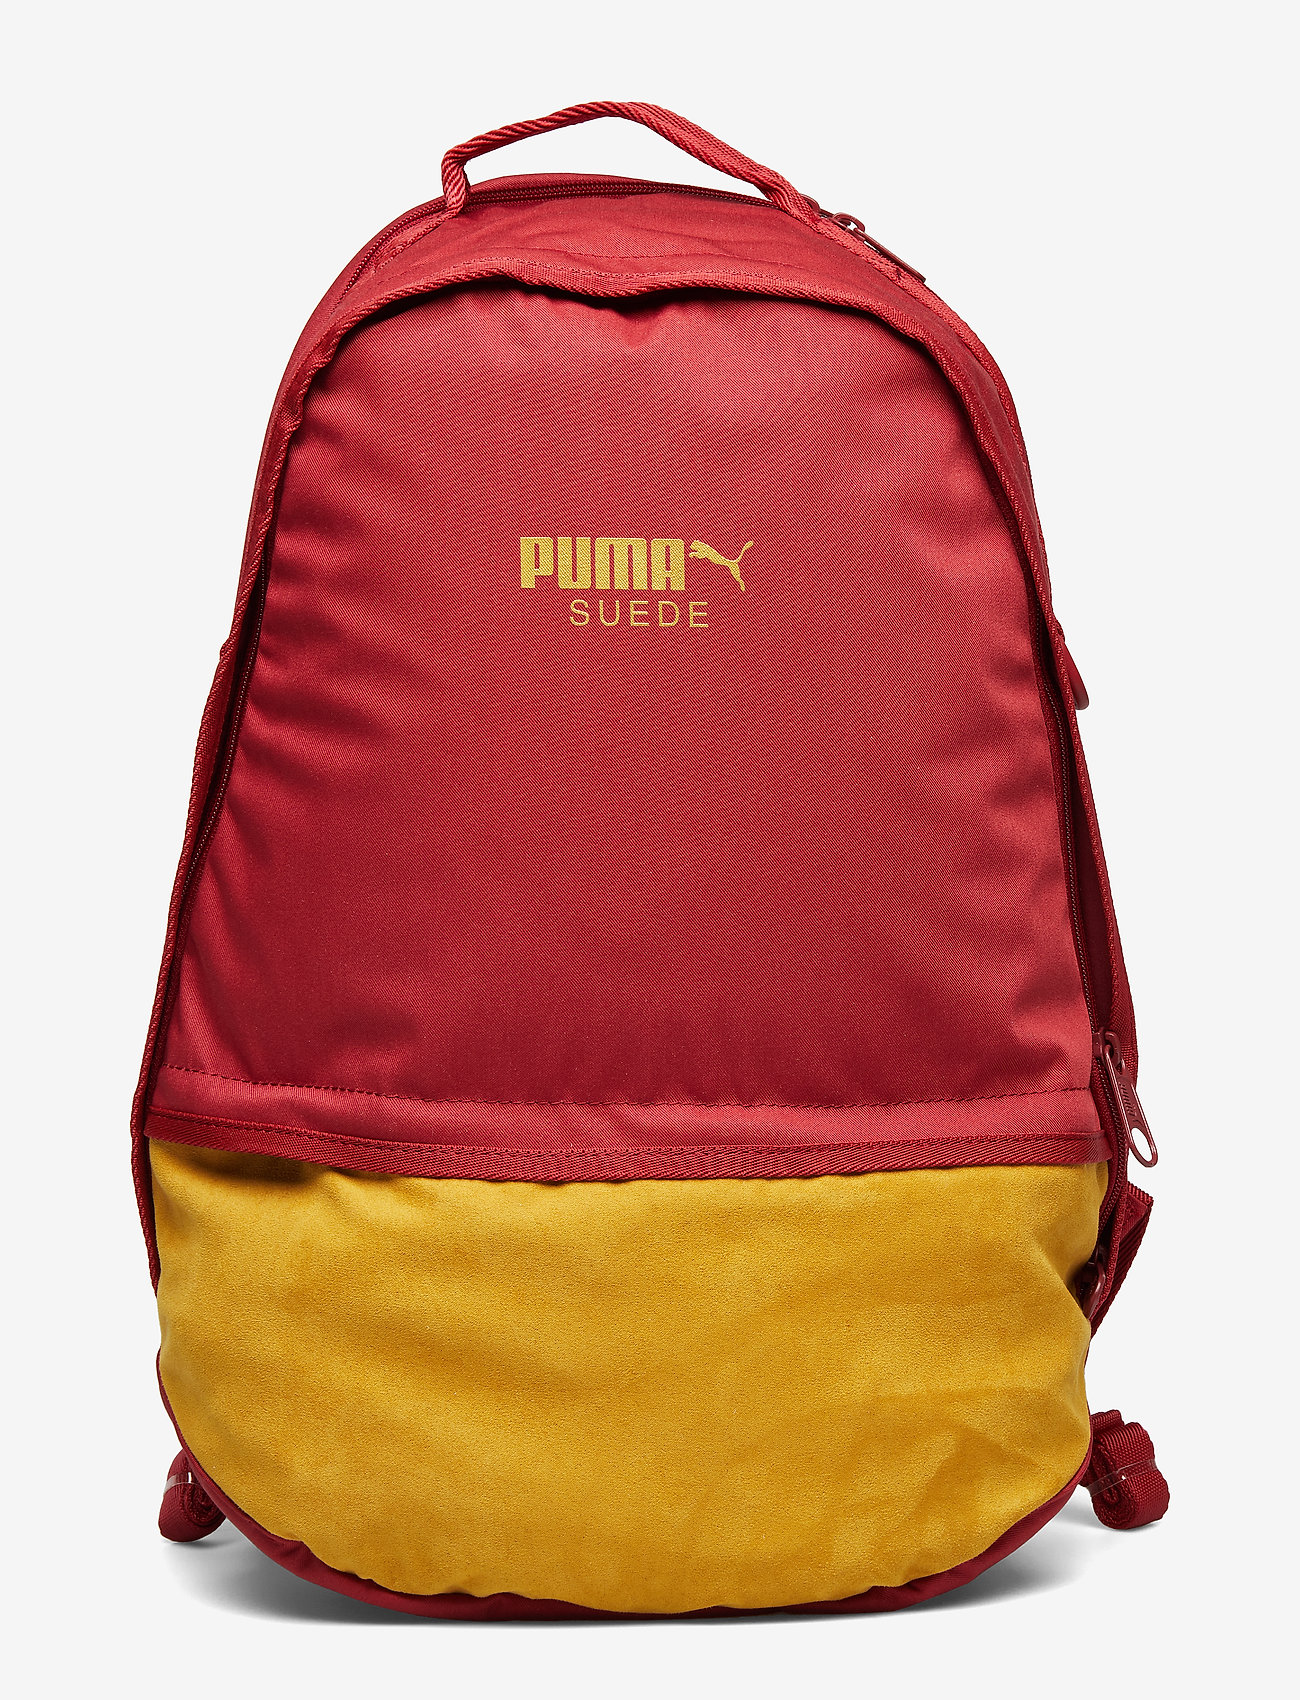 puma backpack red